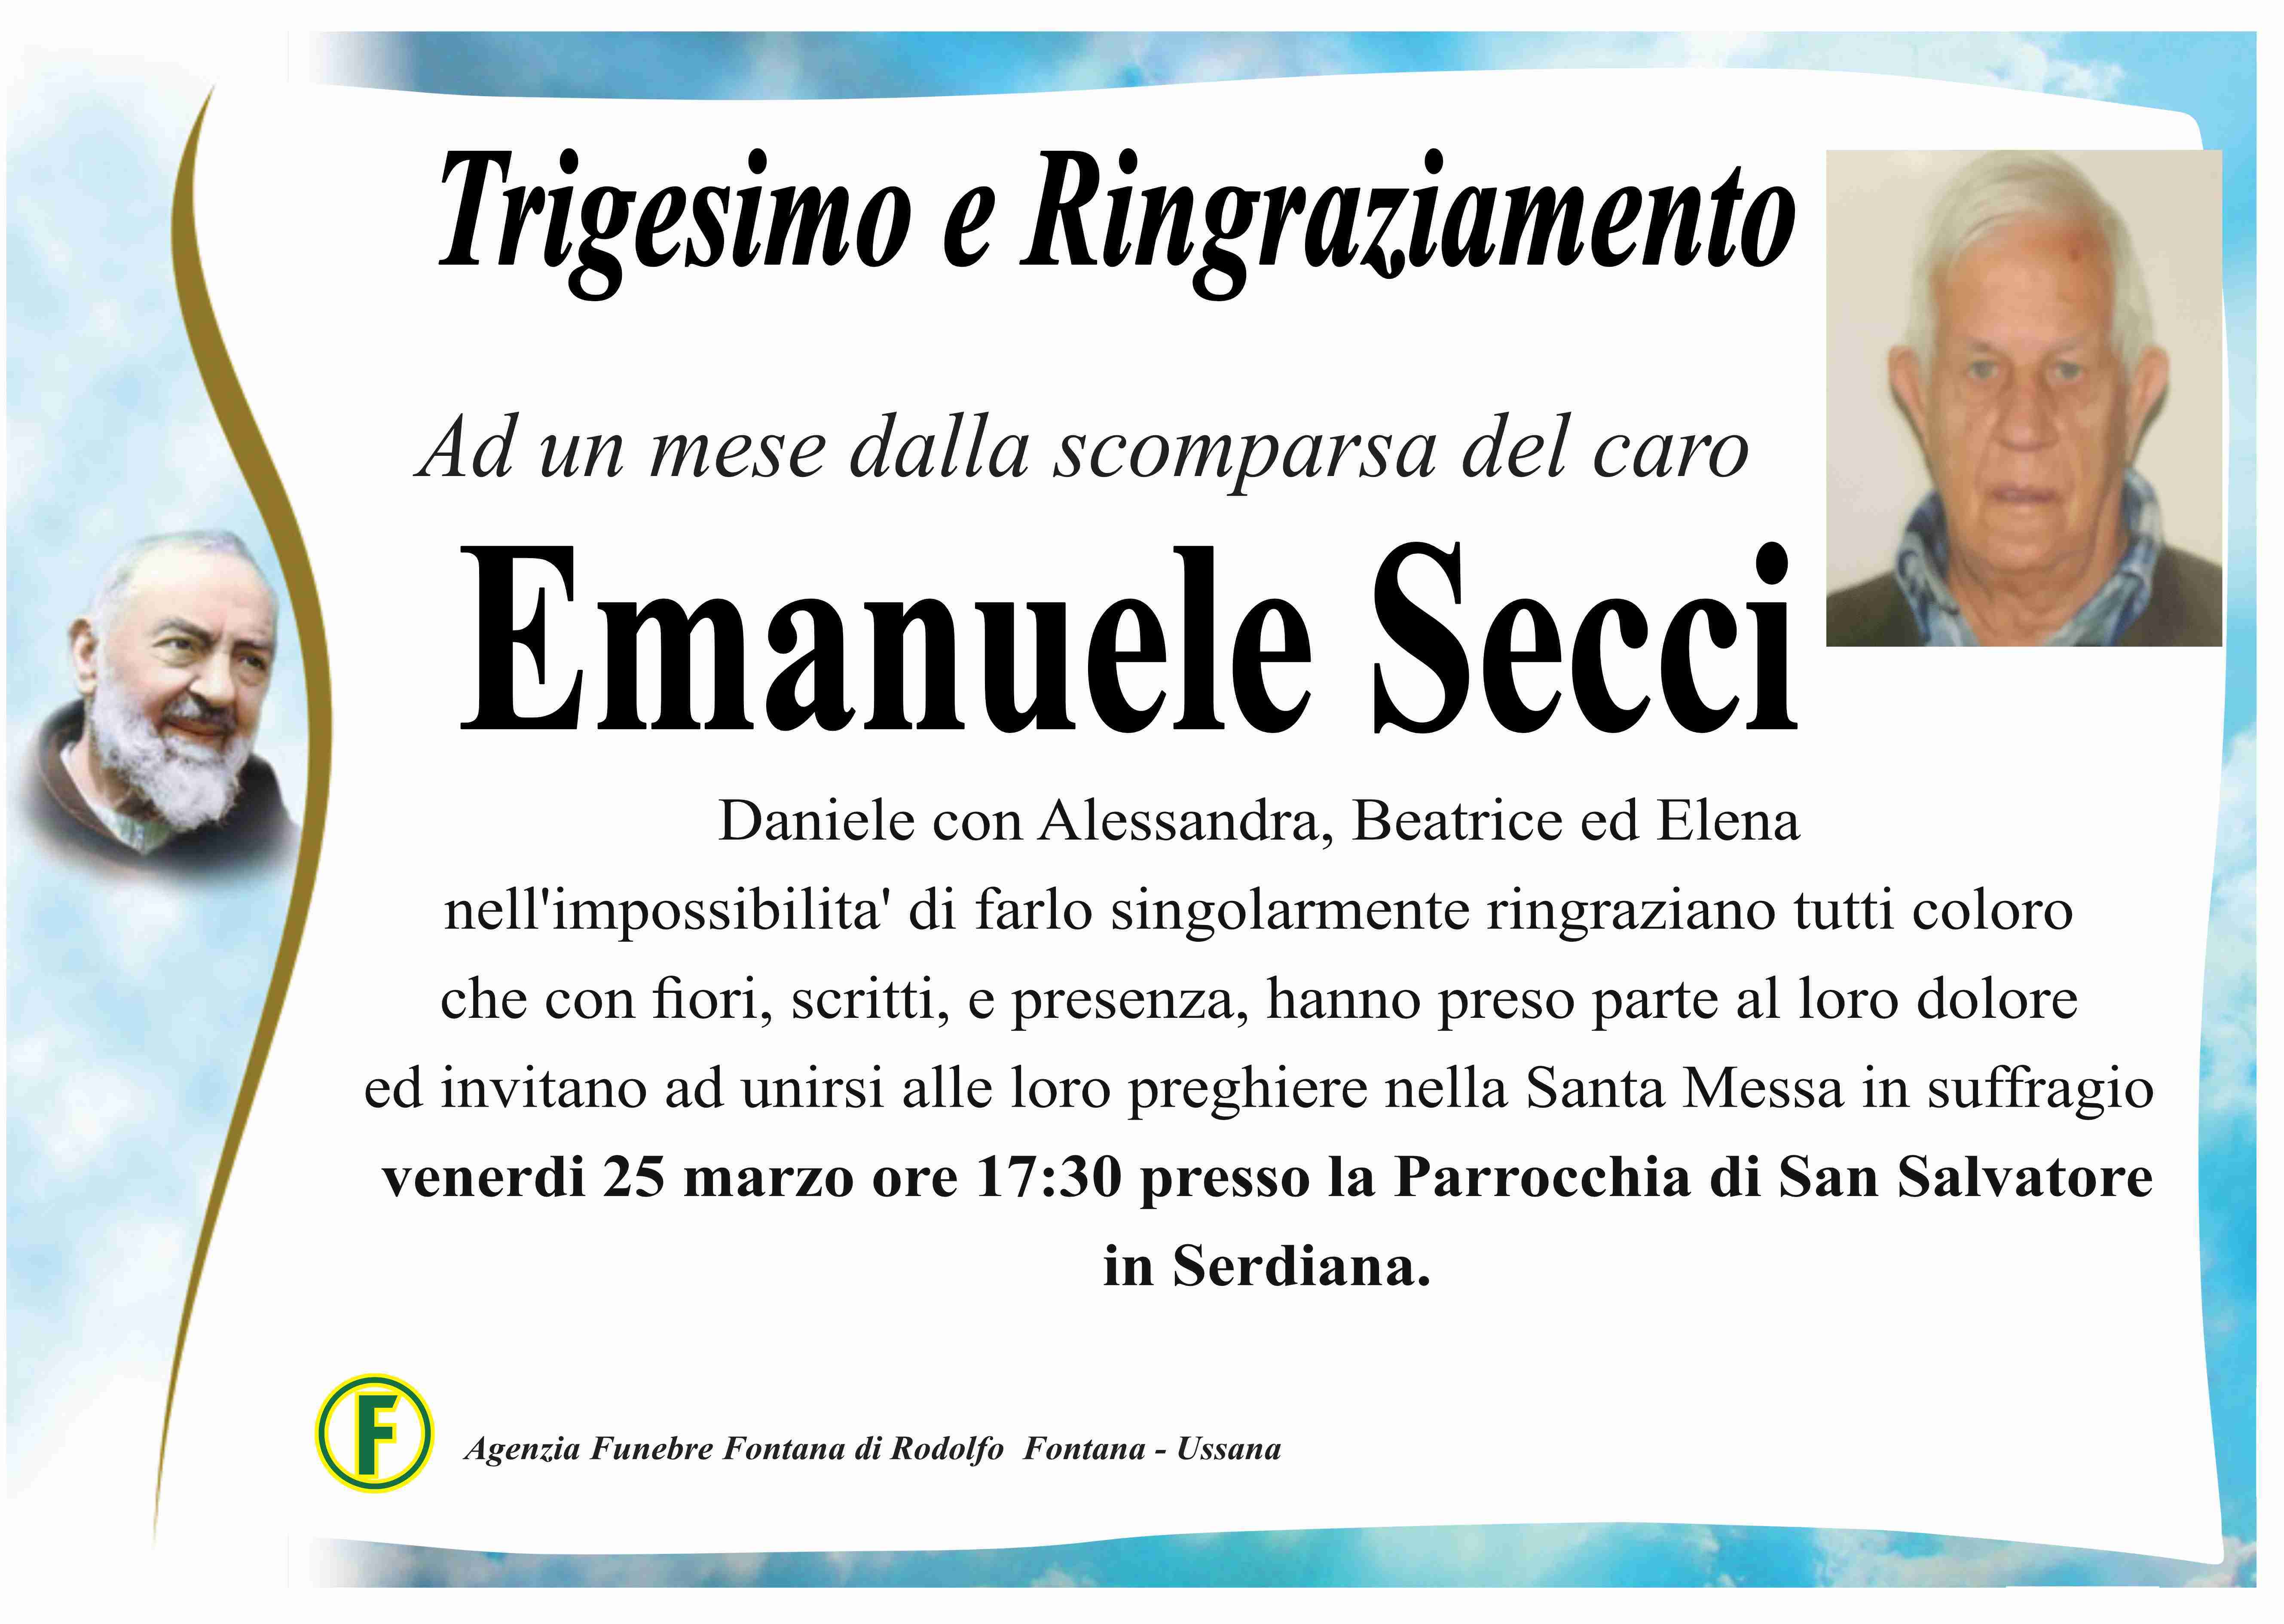 Emanuele Secci